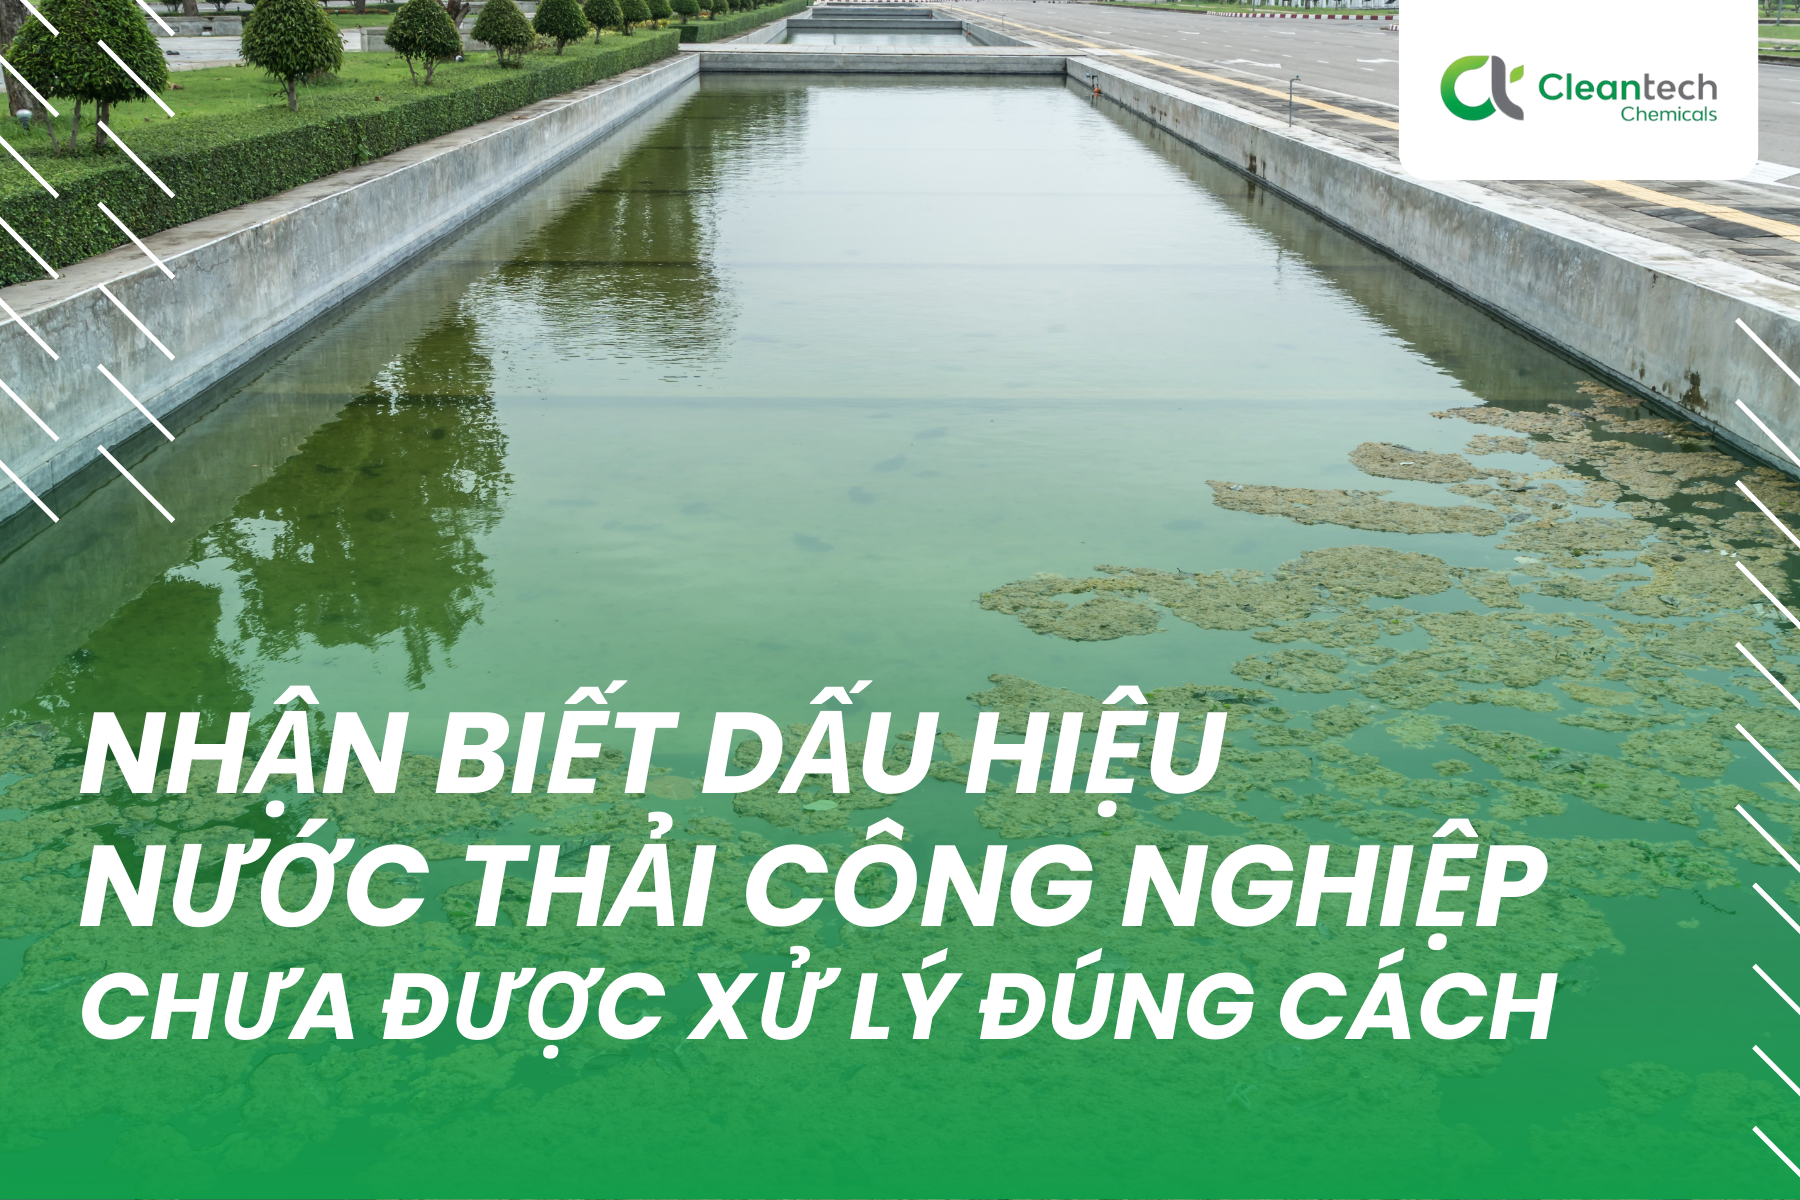 Nhận biết dấu hiệu nước thải công nghiệp chưa được xử lý đúng cách